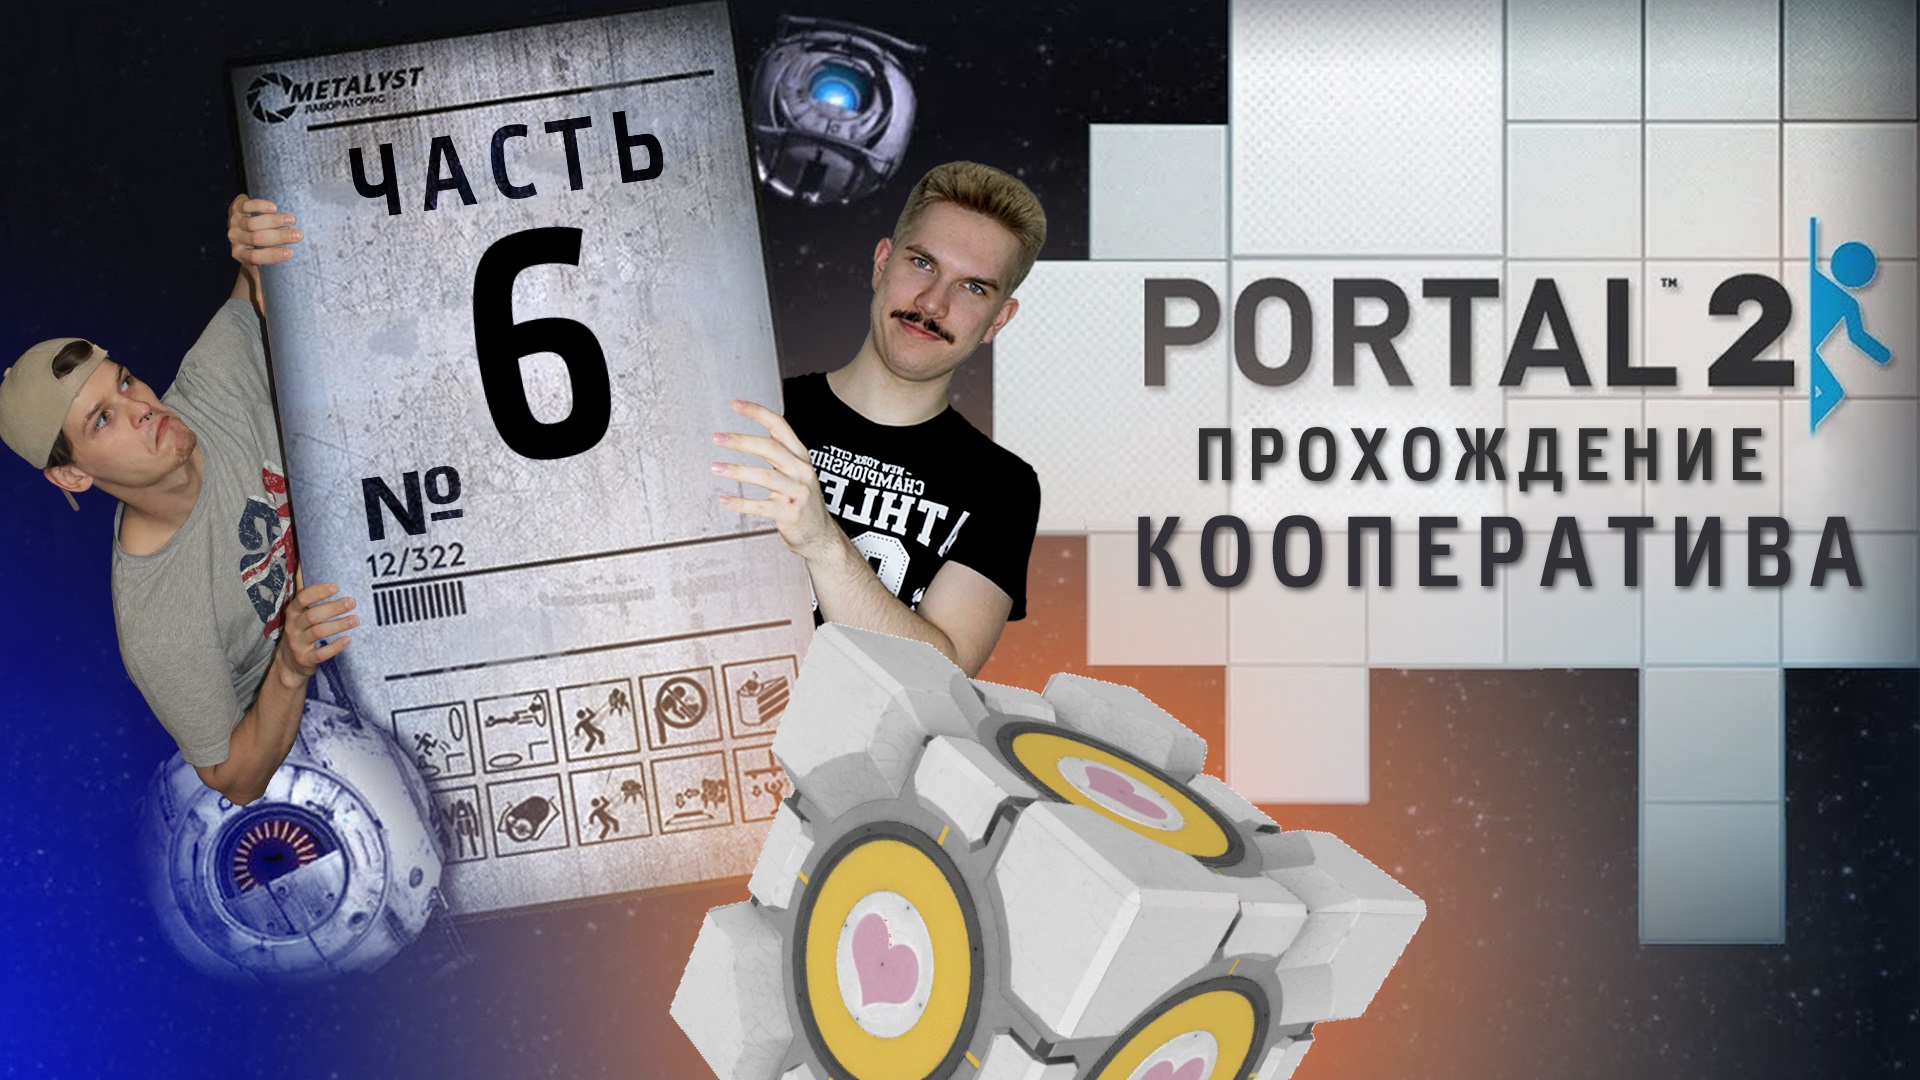 Portal 2 кооператив как пройти фото 35